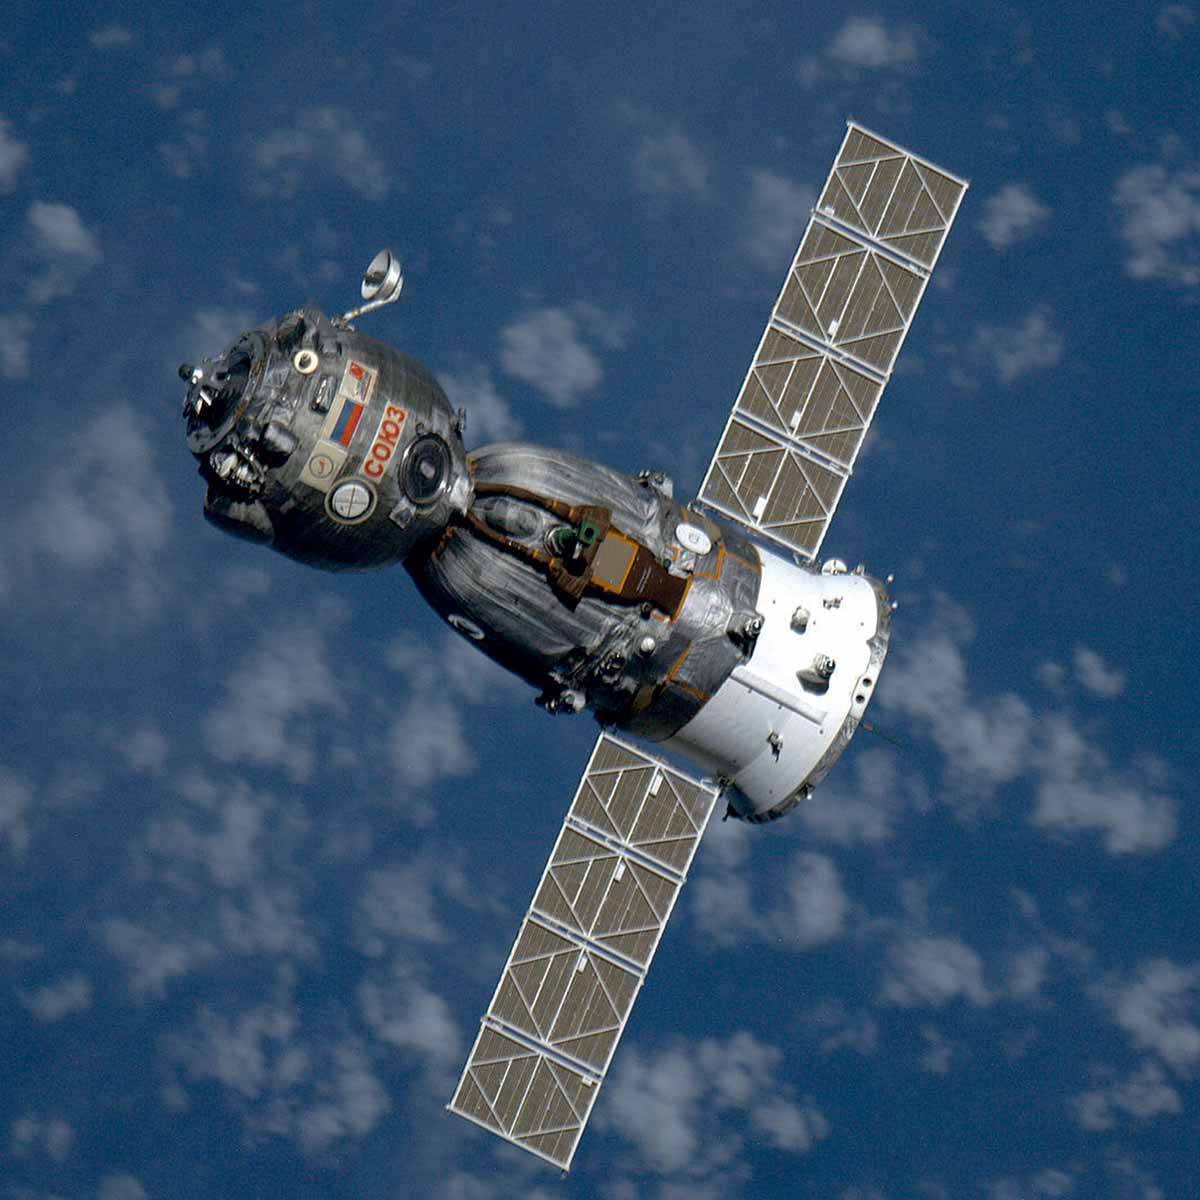 Фото космического корабля в космосе. Пилотируемый космический корабль Союз. Пилотируемый космический корабль Союз-ТМА. Союз т-12 космический корабль. Космический корабль Союз-ТМ.